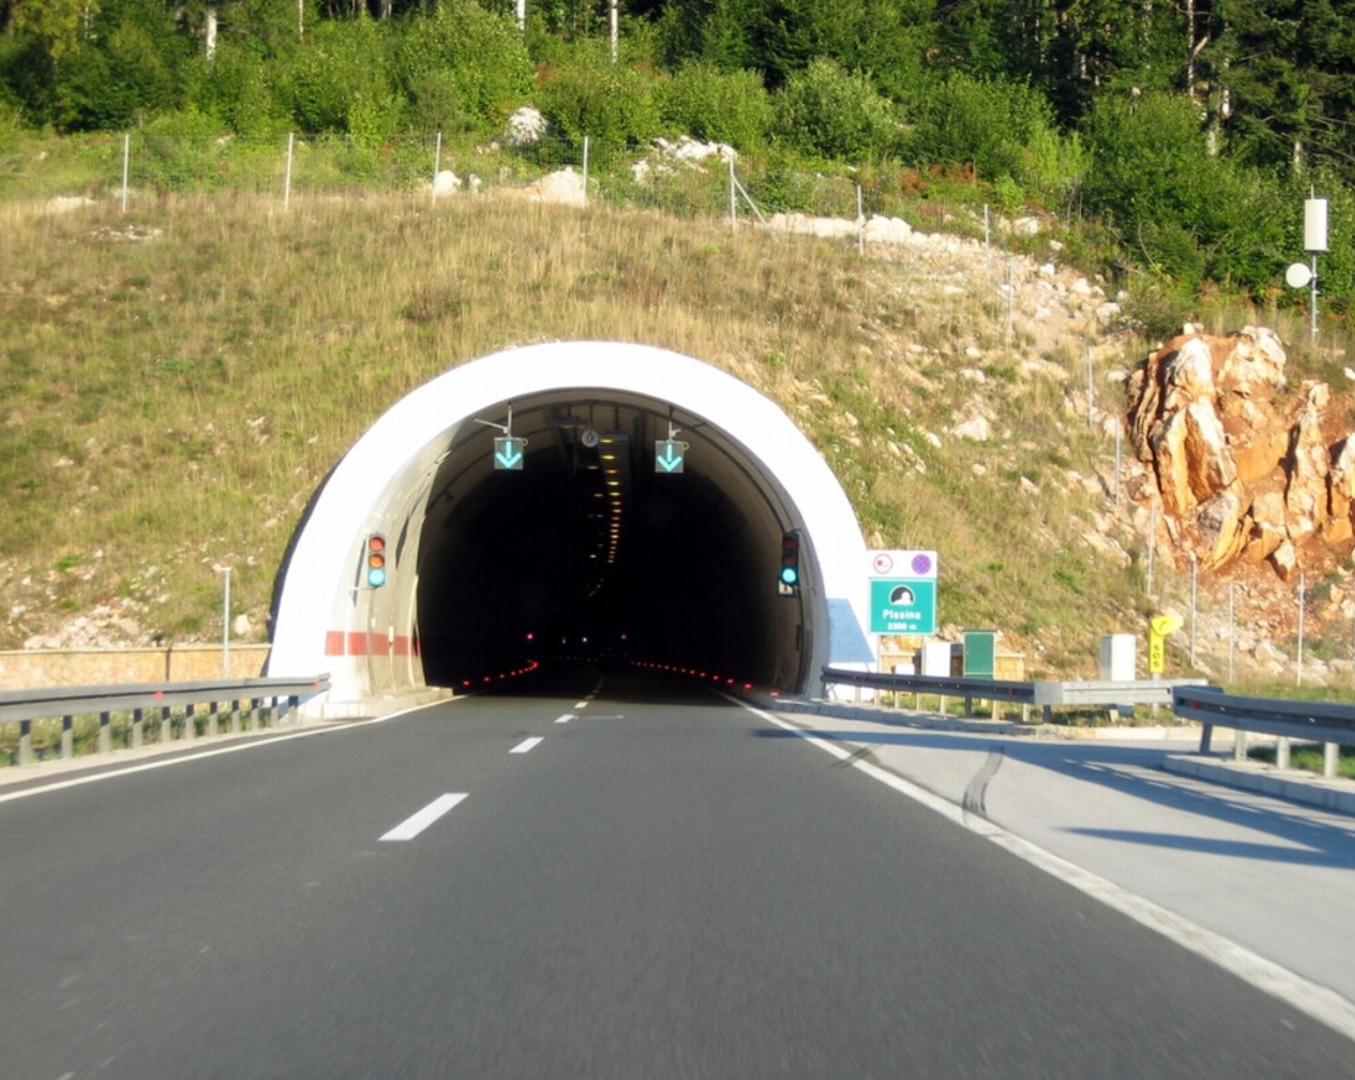 6. Tunel Plasina, 2.300 metara: Tunel Plasina, koji se nalazi na autocesti A1 između Žute Lokve i Ličkog Lešća, sastoji se od dvije tunelske cijevi, svaka duga 2300 metara. Prepoznat je kao treći najsigurniji tunel u Europi prema testiranju Euro TAP-a provedenom 2005. godine, s maksimalnom brzinom od 100 km/h.